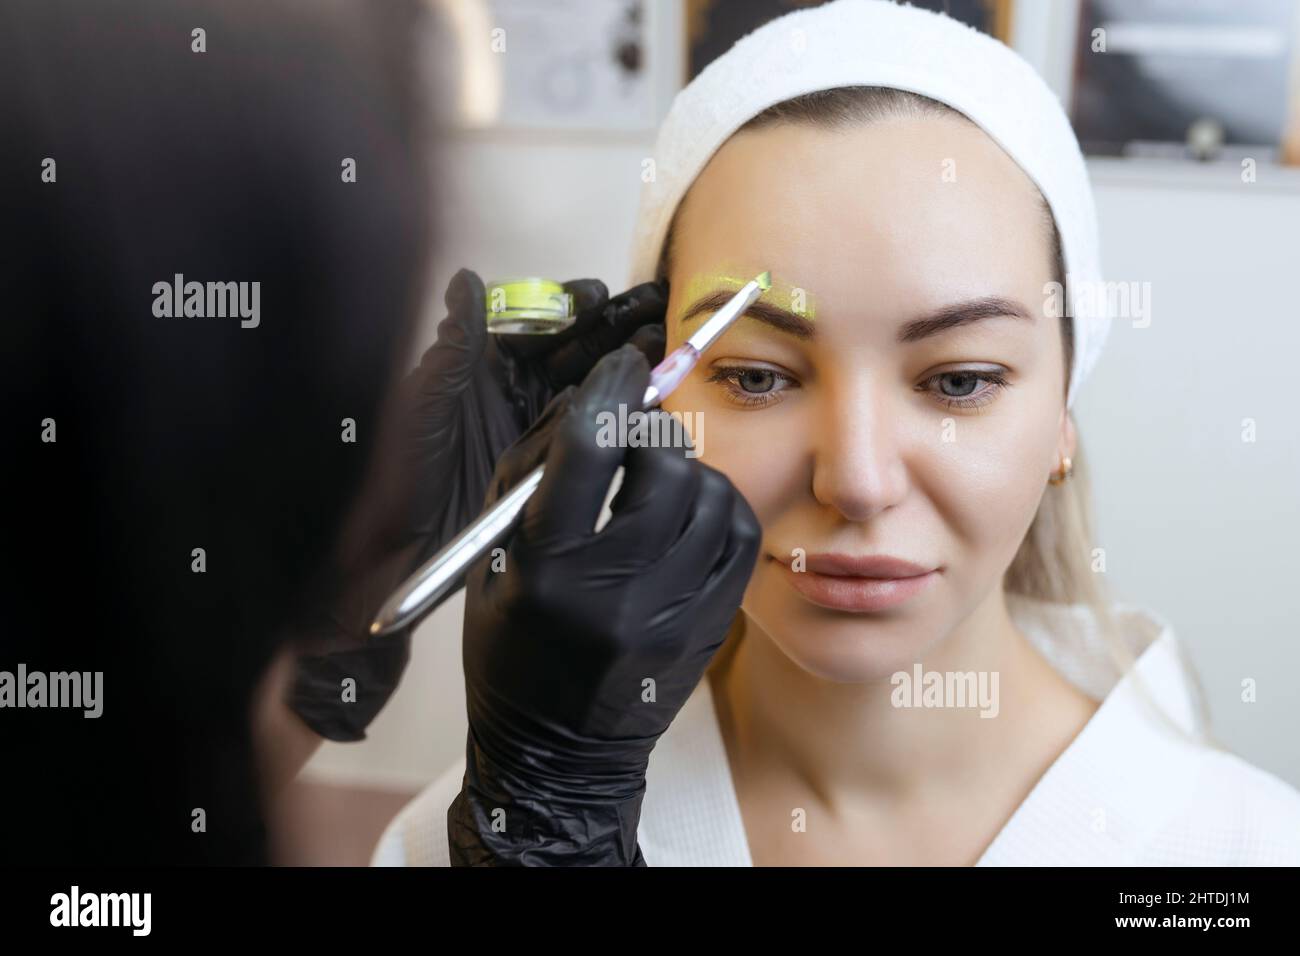 Die Hand eines Make-up Künstlers in schwarzen Handschuhen trägt eine gelbe Augenbrauenpaste auf die Augenbraue auf. Professionelle stilvolle dauerhafte Make-up, Augenbrauen färben Stockfoto